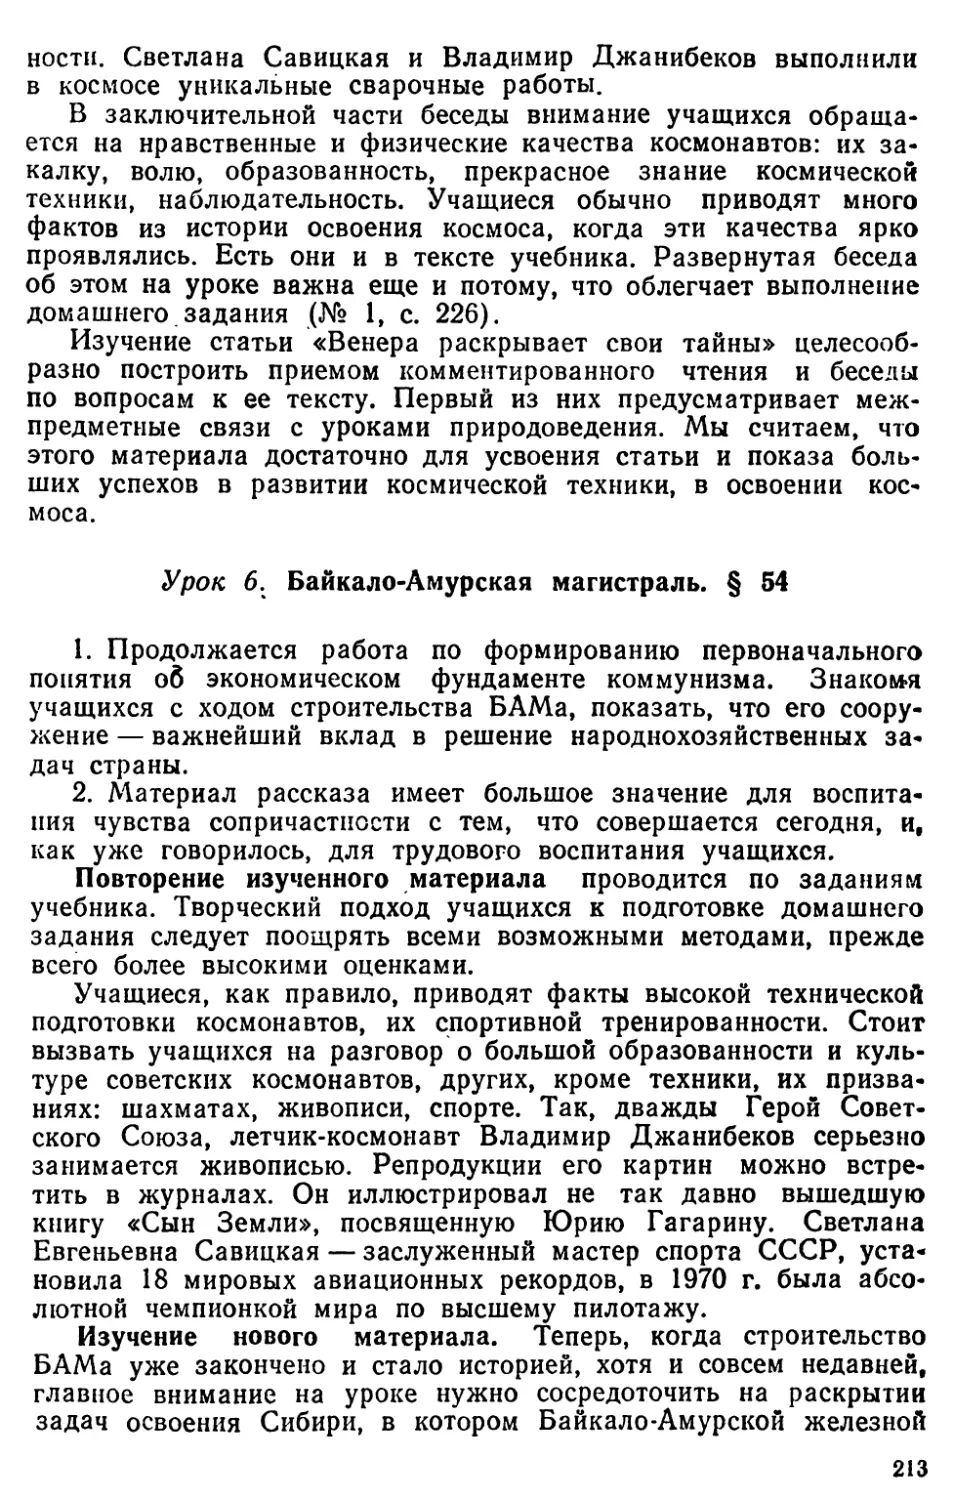 Урок 6. Байкало-Амурская магистраль. § 54